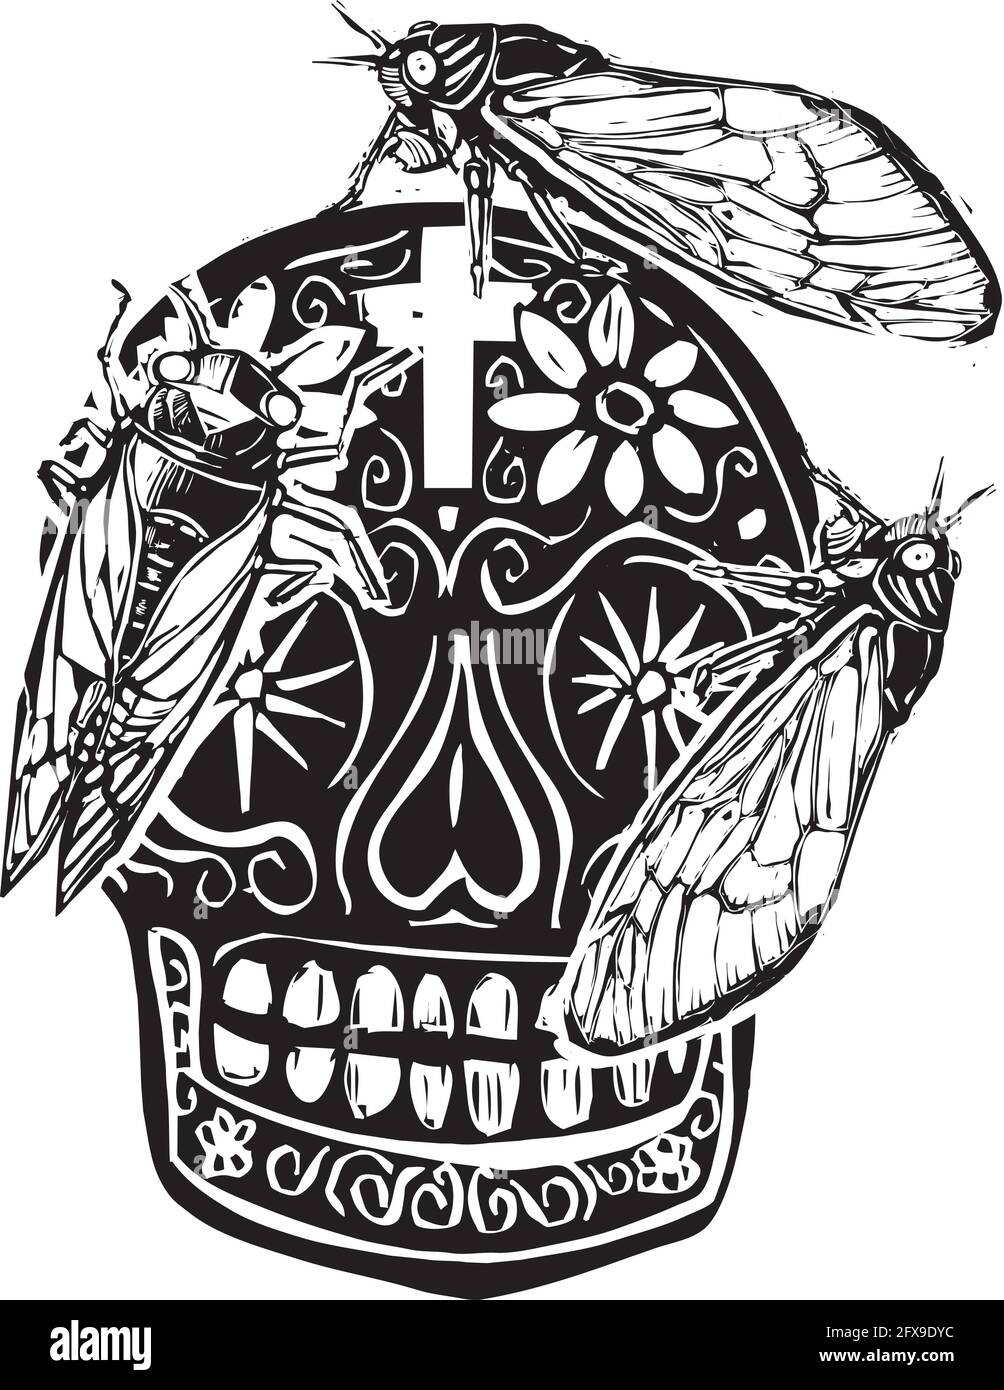 Image de style expressionniste de coupe de bois de bromod X cigadas rampant sur un jour du crâne de sucre mort Illustration de Vecteur